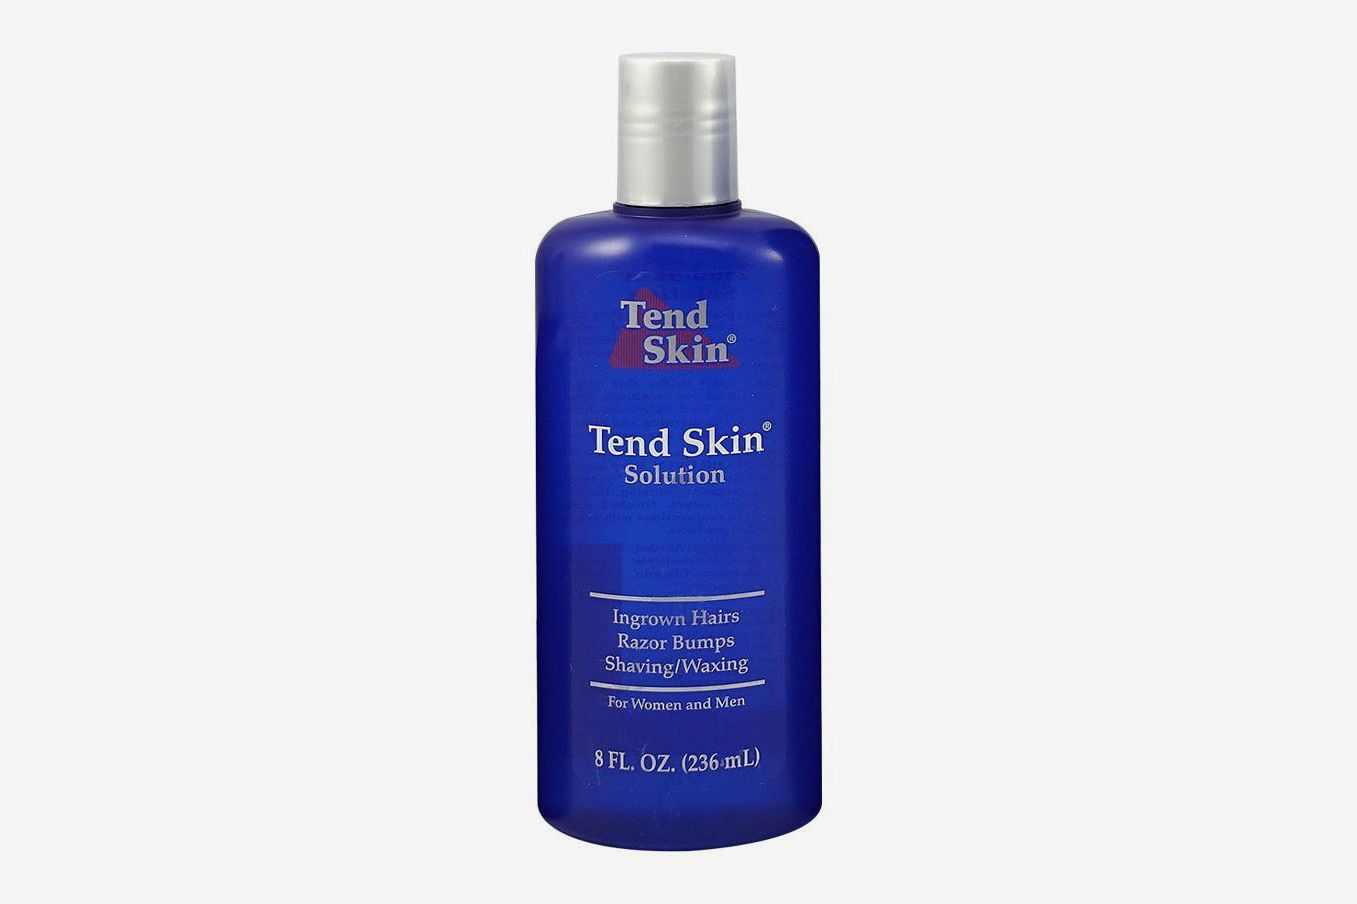 Tend Skin Razor Burn Review 2019